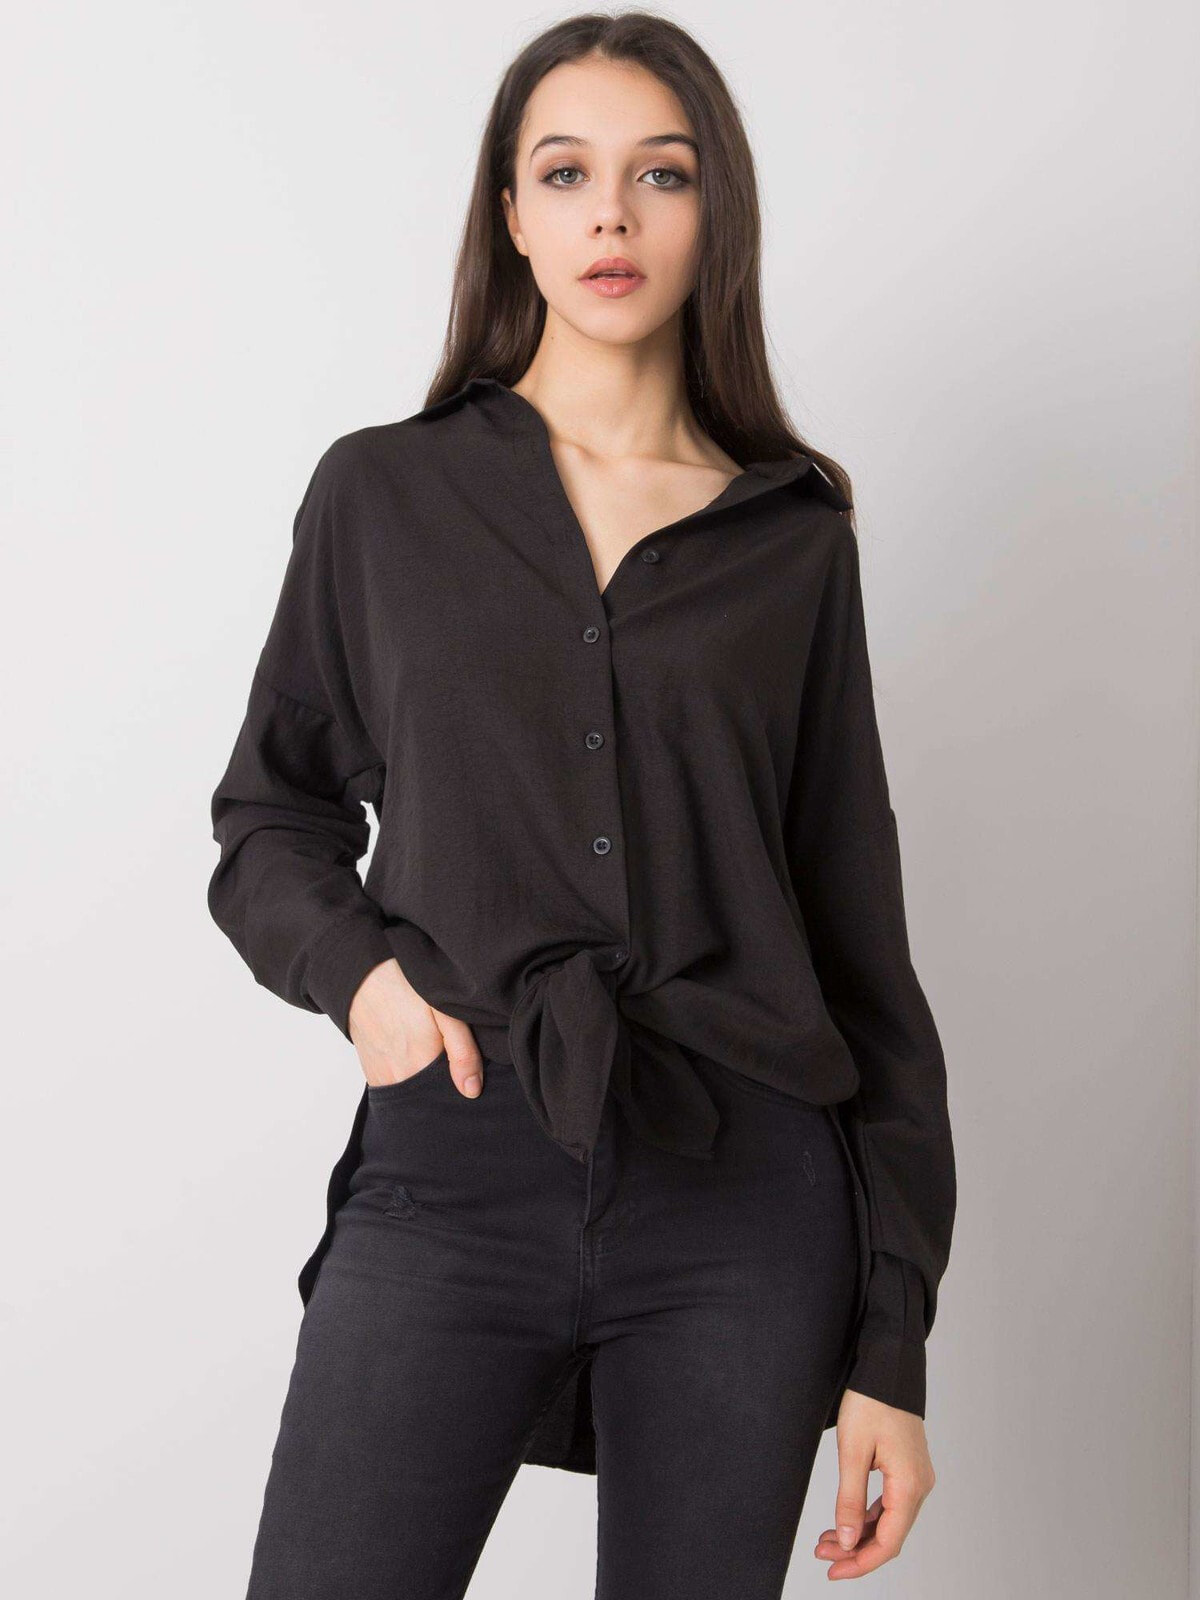 Женская удлиненная рубашка прямого кроя с длинным рукавом черная Factory Price